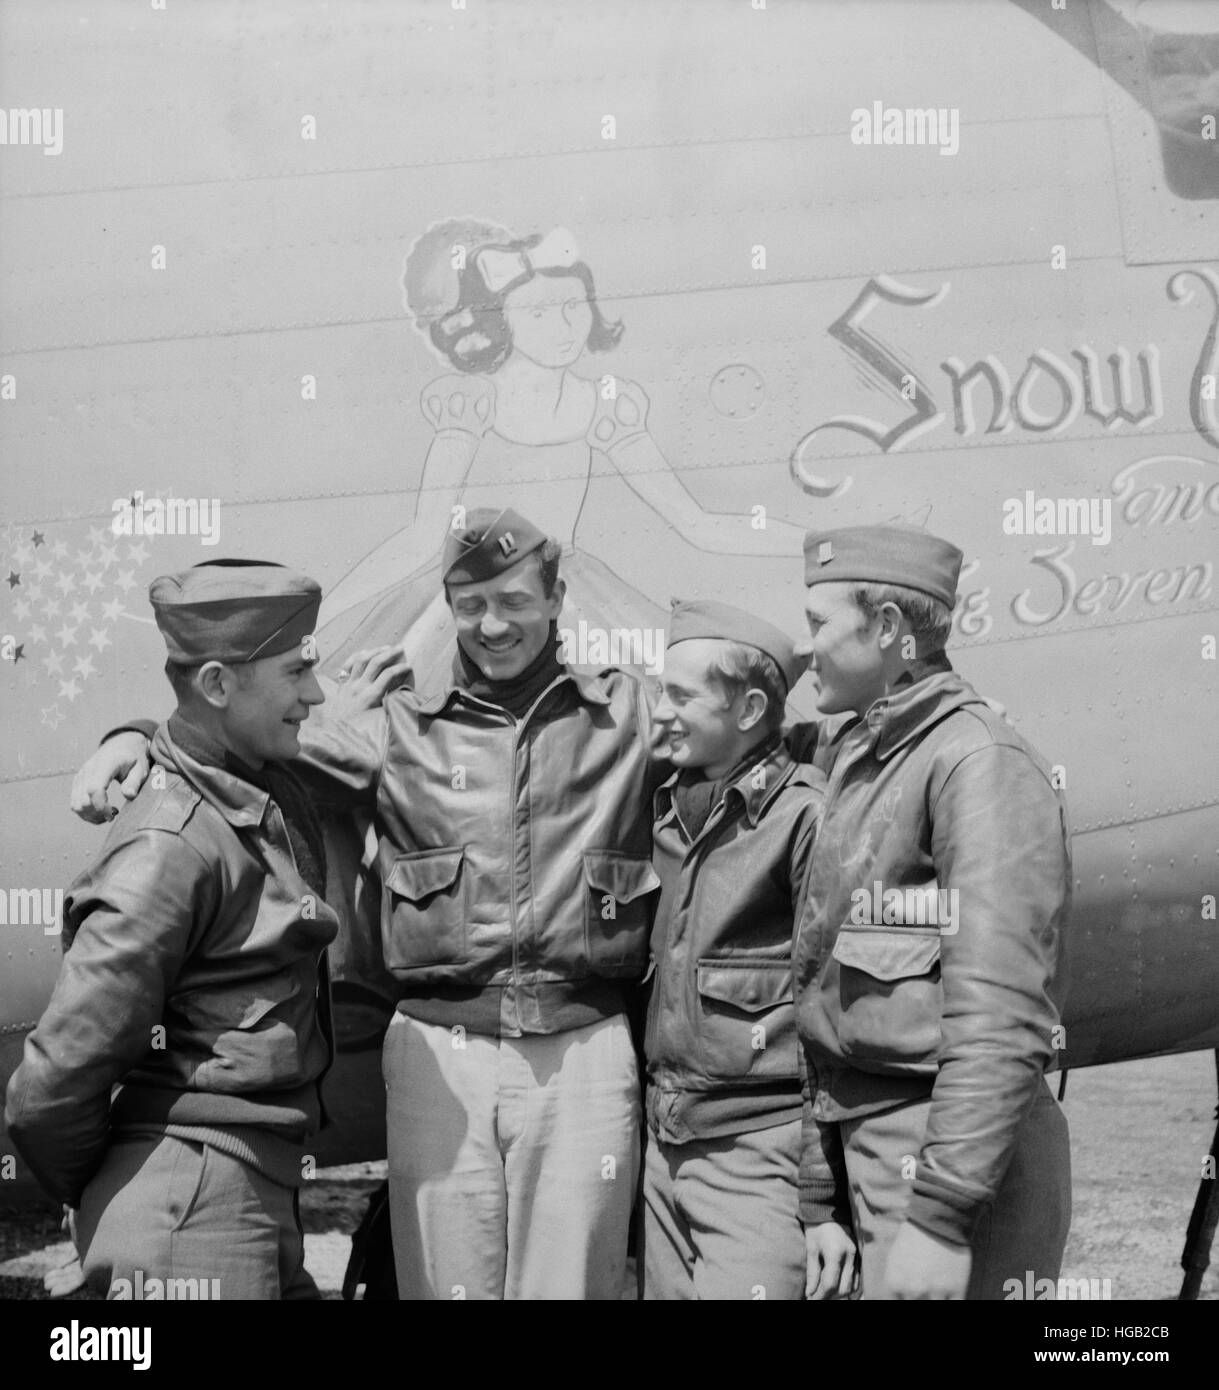 Besatzungsmitglieder eines b-24 Bomber der US-Armee 9. Air Force, 1943. Stockfoto